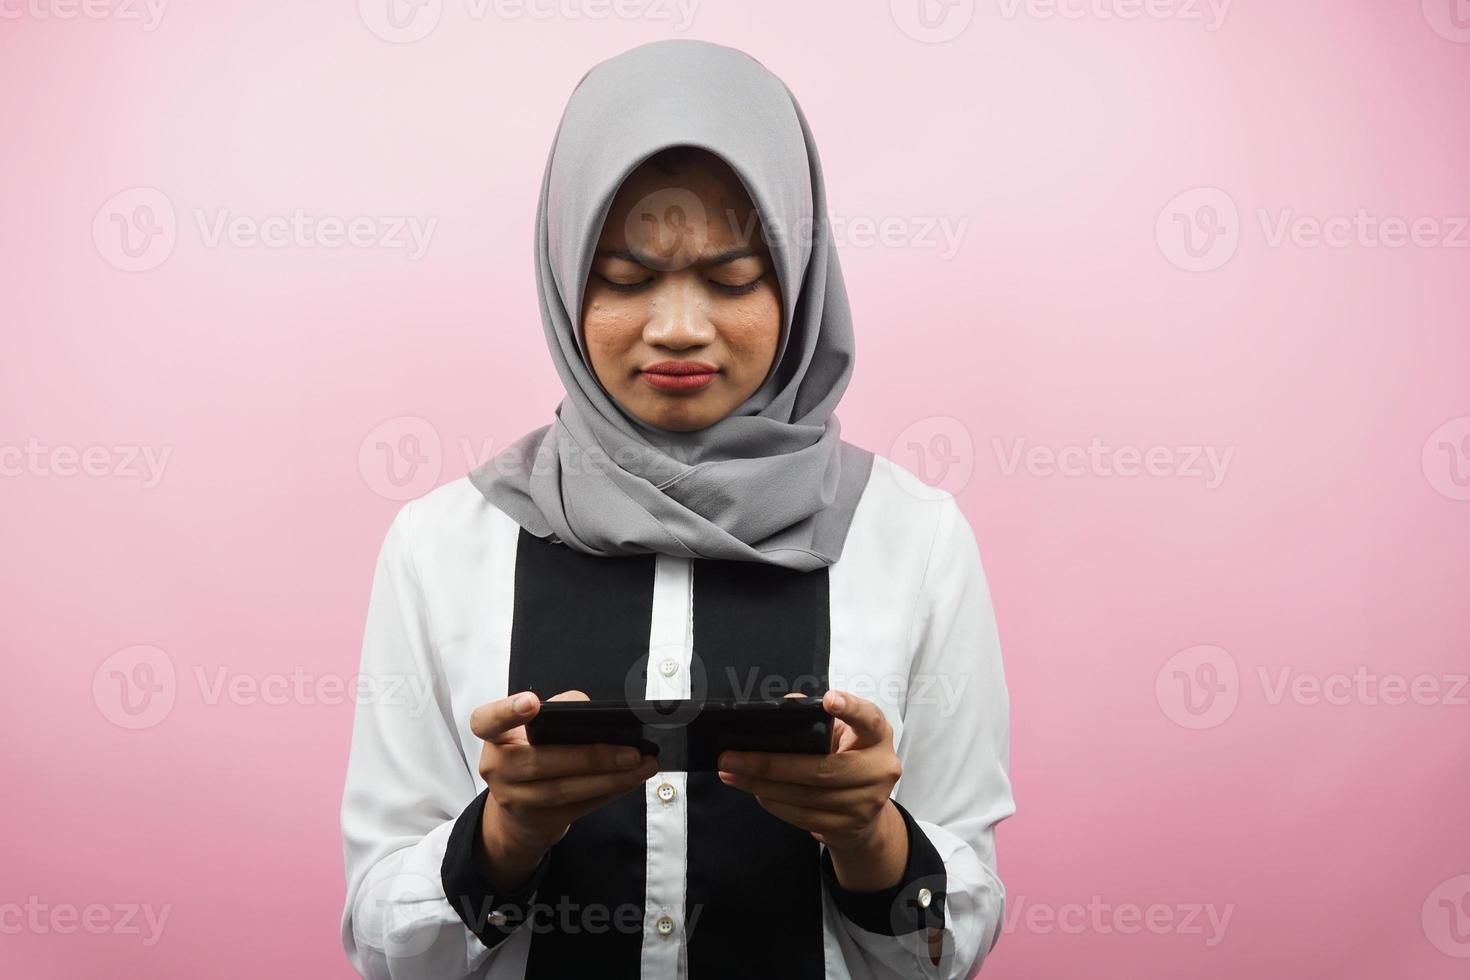 belle jeune femme musulmane asiatique avec une main tenant un smartphone, jouant au jeu, triste, défaite, malheureuse, isolée sur fond rose, concept publicitaire photo